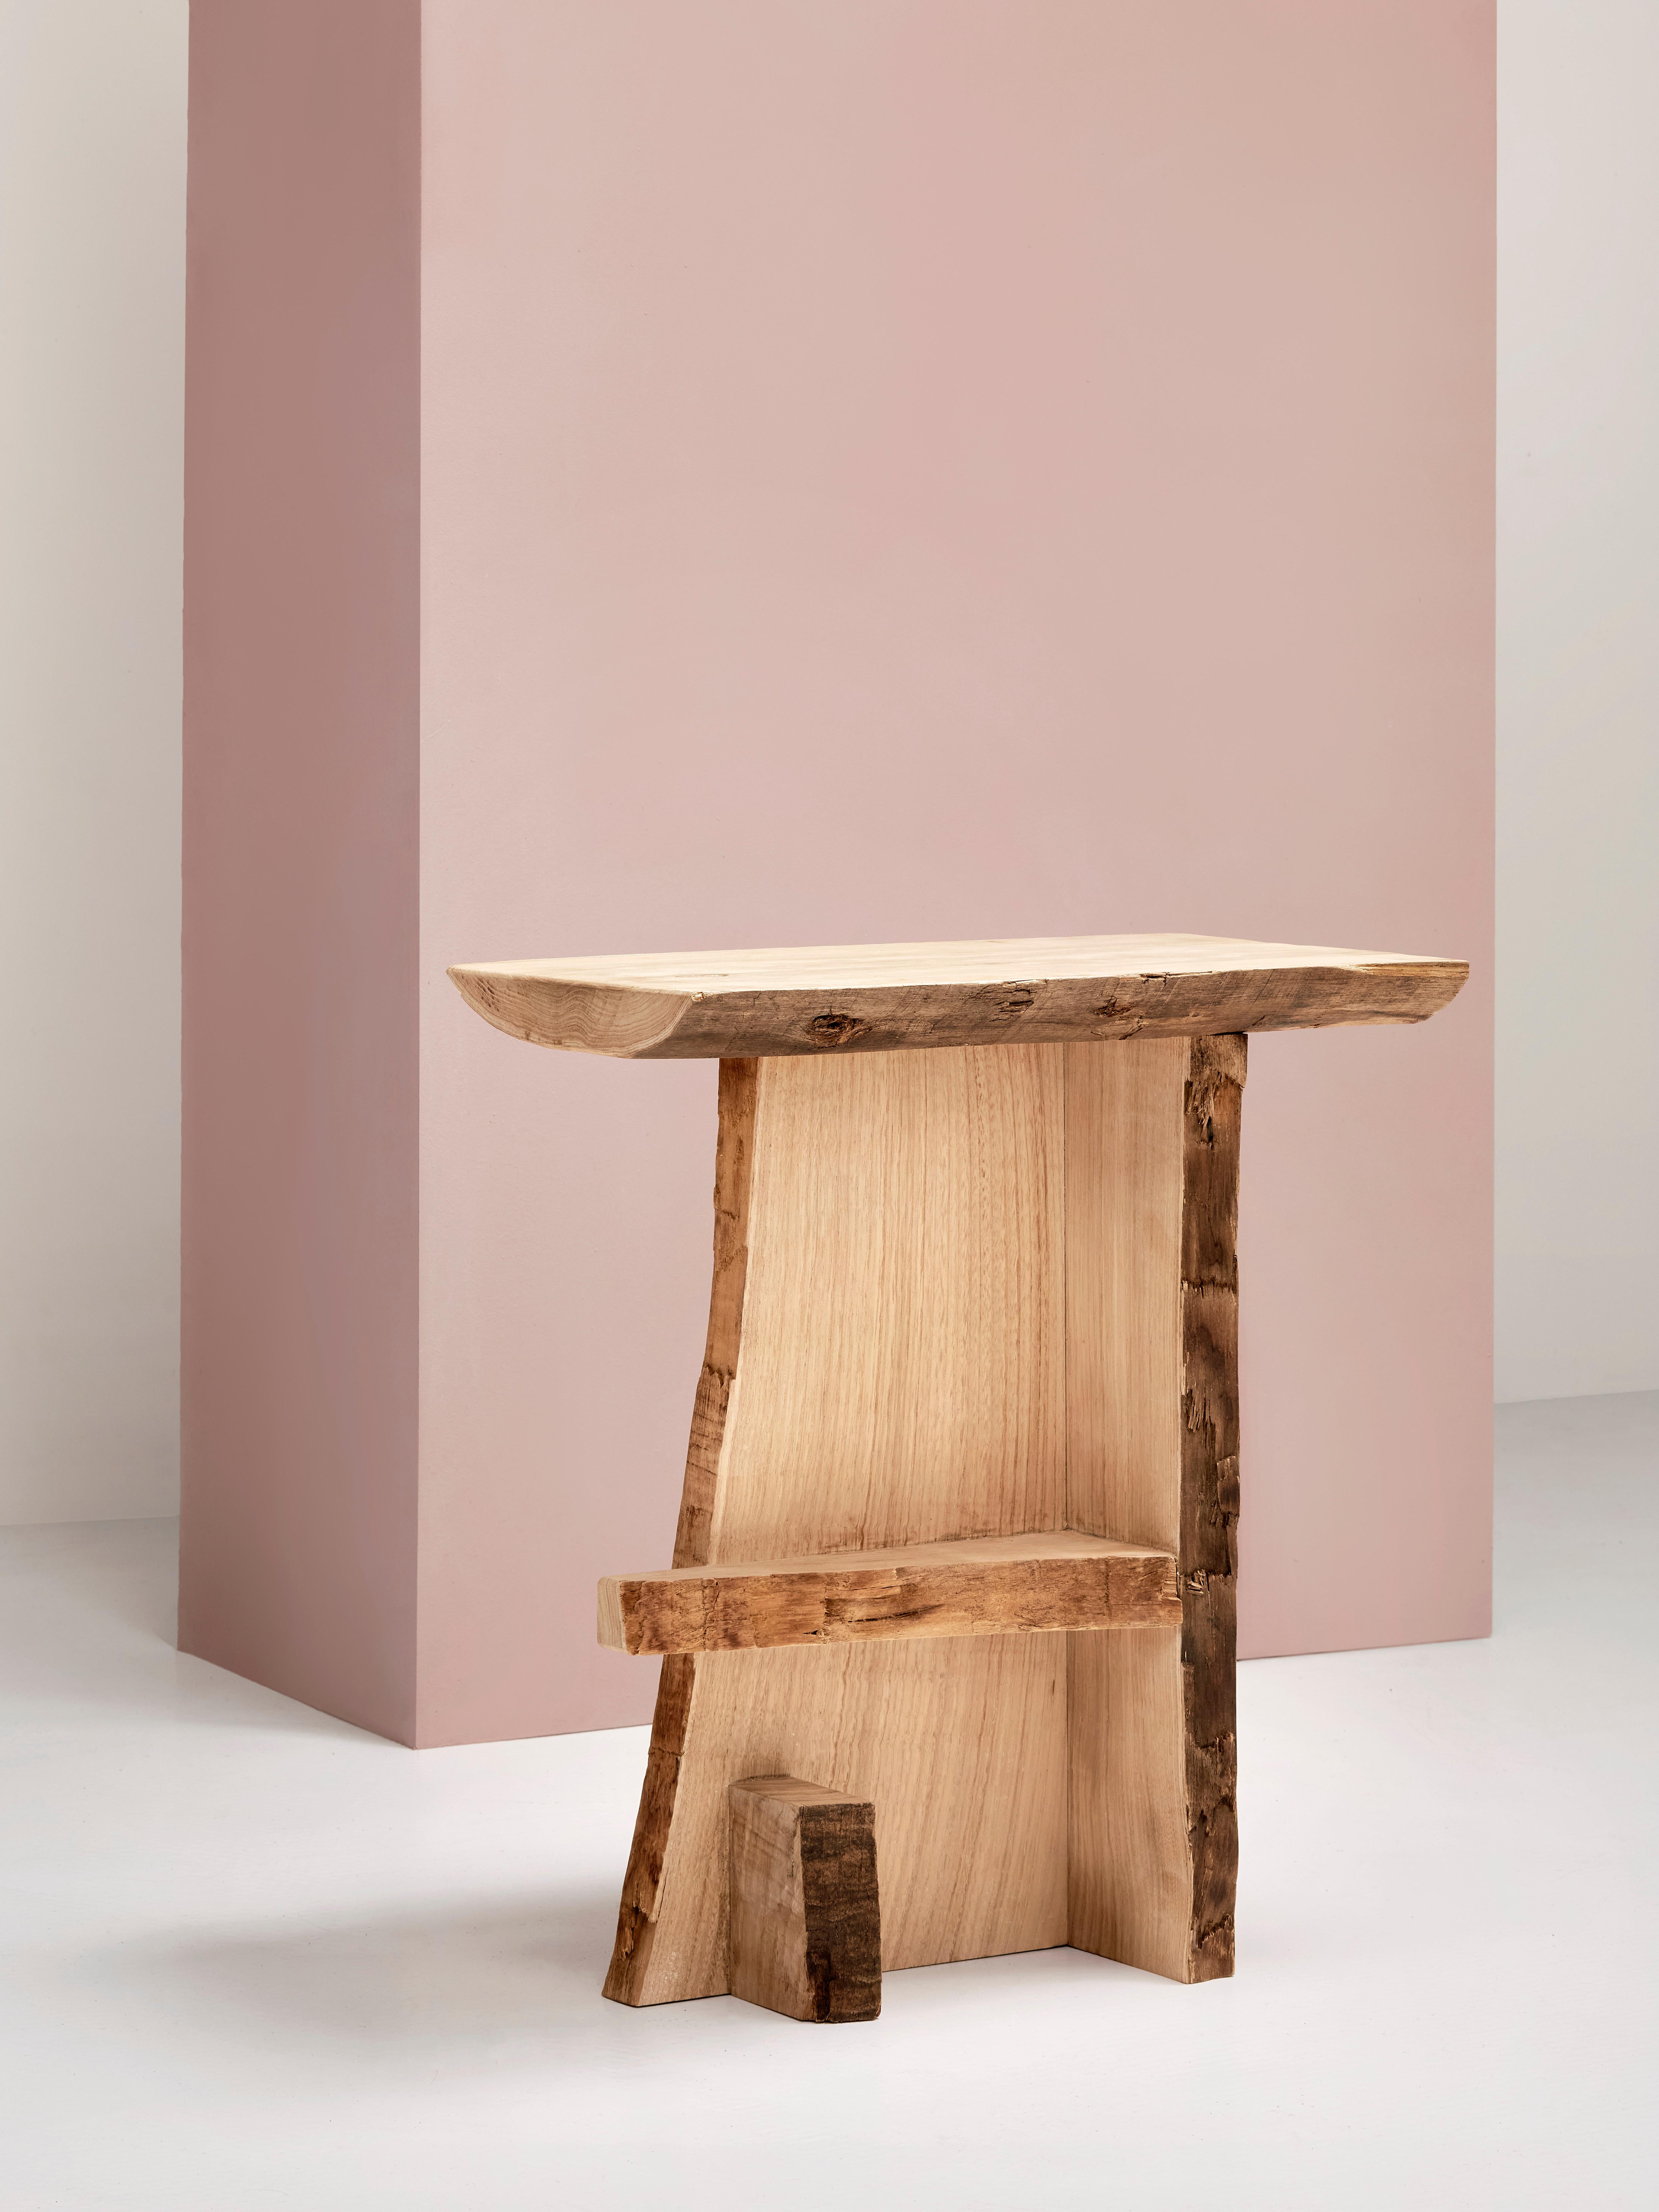 Ripped-Holztisch von Willem Van Hooff
Handgefertigt
Abmessungen: B 38 x H 68 cm (Die Maße können variieren, da die Stücke handgefertigt sind und leichte Größenabweichungen aufweisen können)
MATERIALIEN: Holz.


Willem van Hooff ist ein in Eindhoven